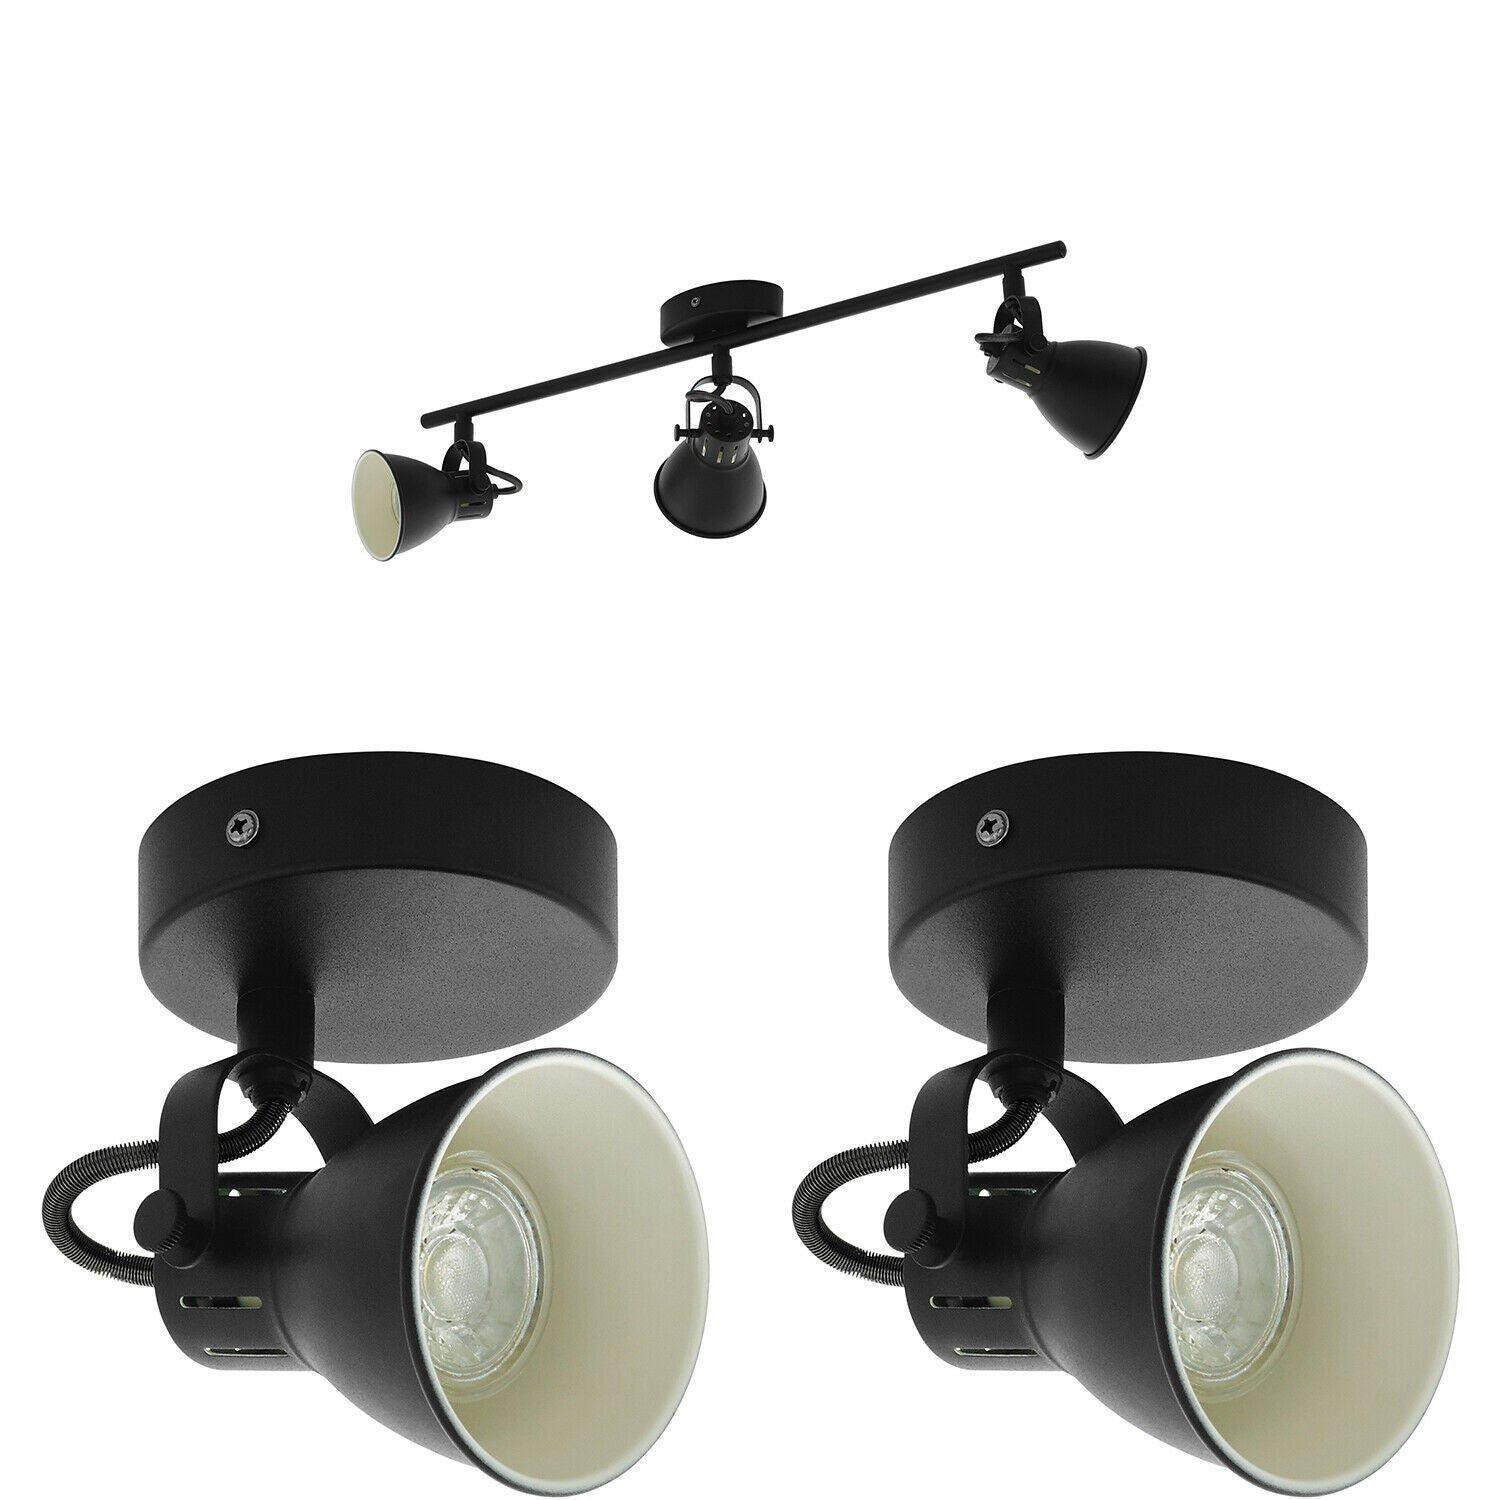 Ceiling Spot Light & 2x Matching Wall Lights Matt Black Adjustable Kitchen Lamp - image 1